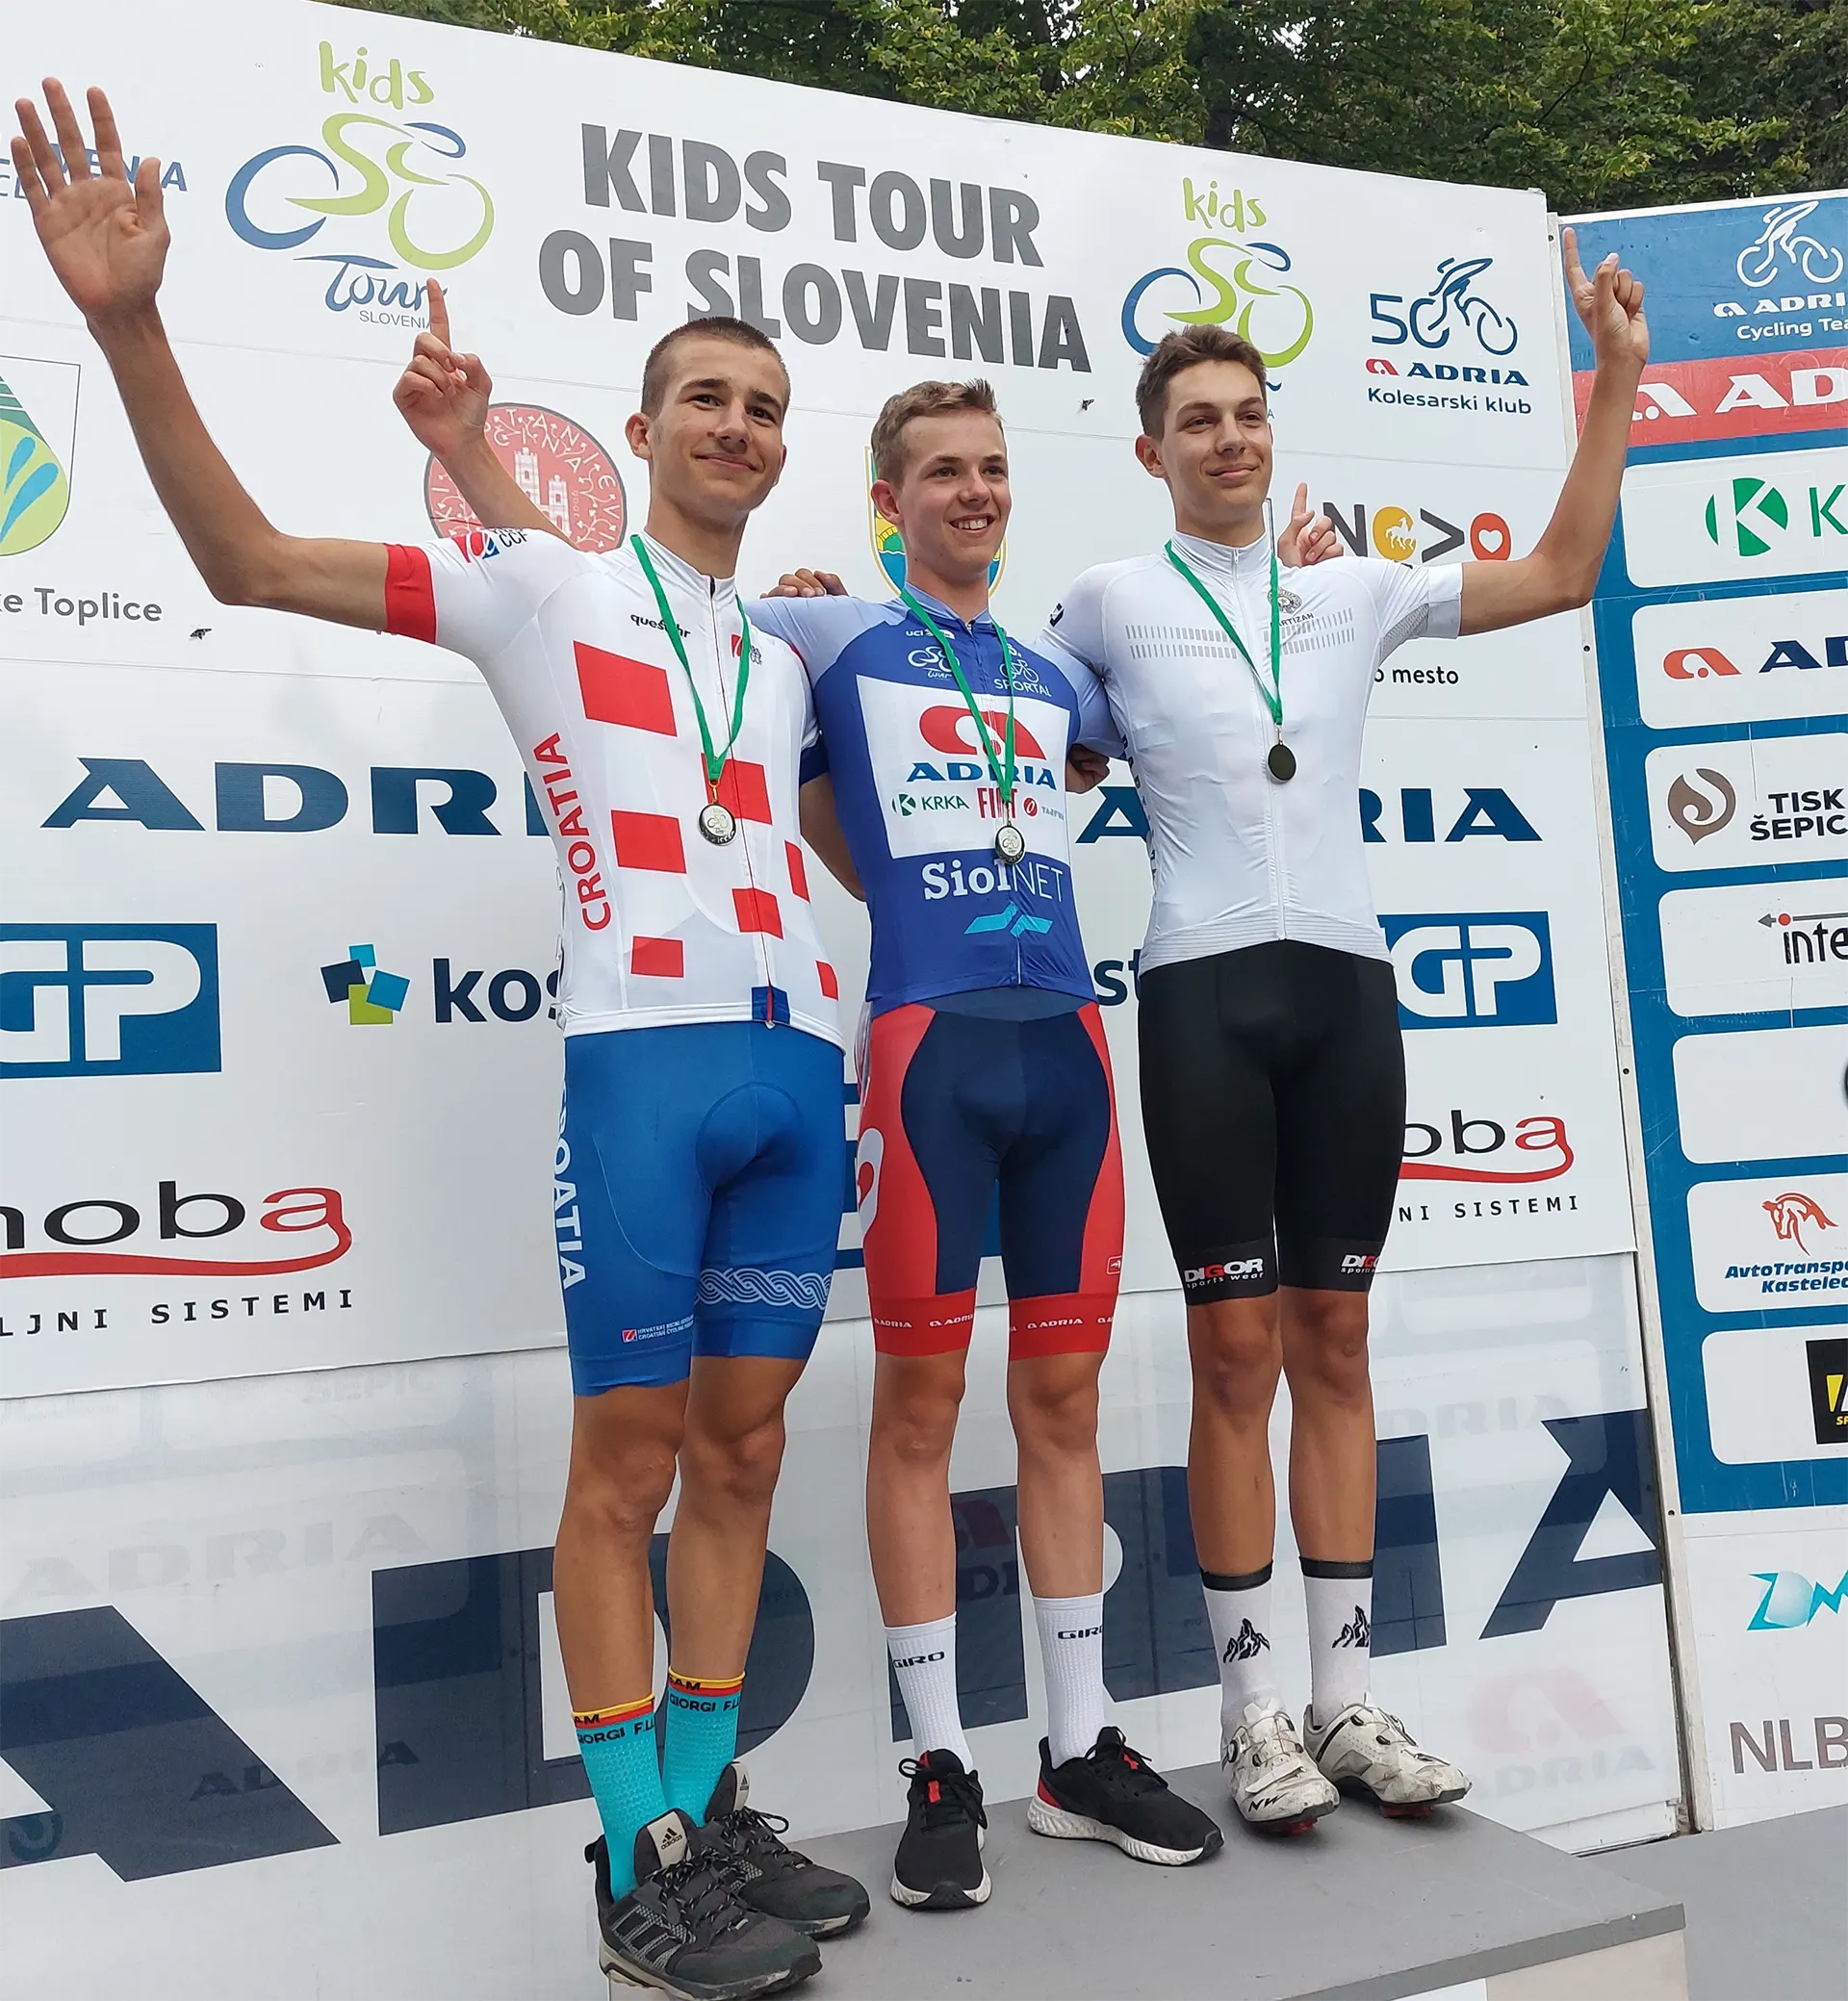 Jakob Omrzel zmagovalec 1. etape med mlajšimi mladinci na Kids Tour of Slovenia